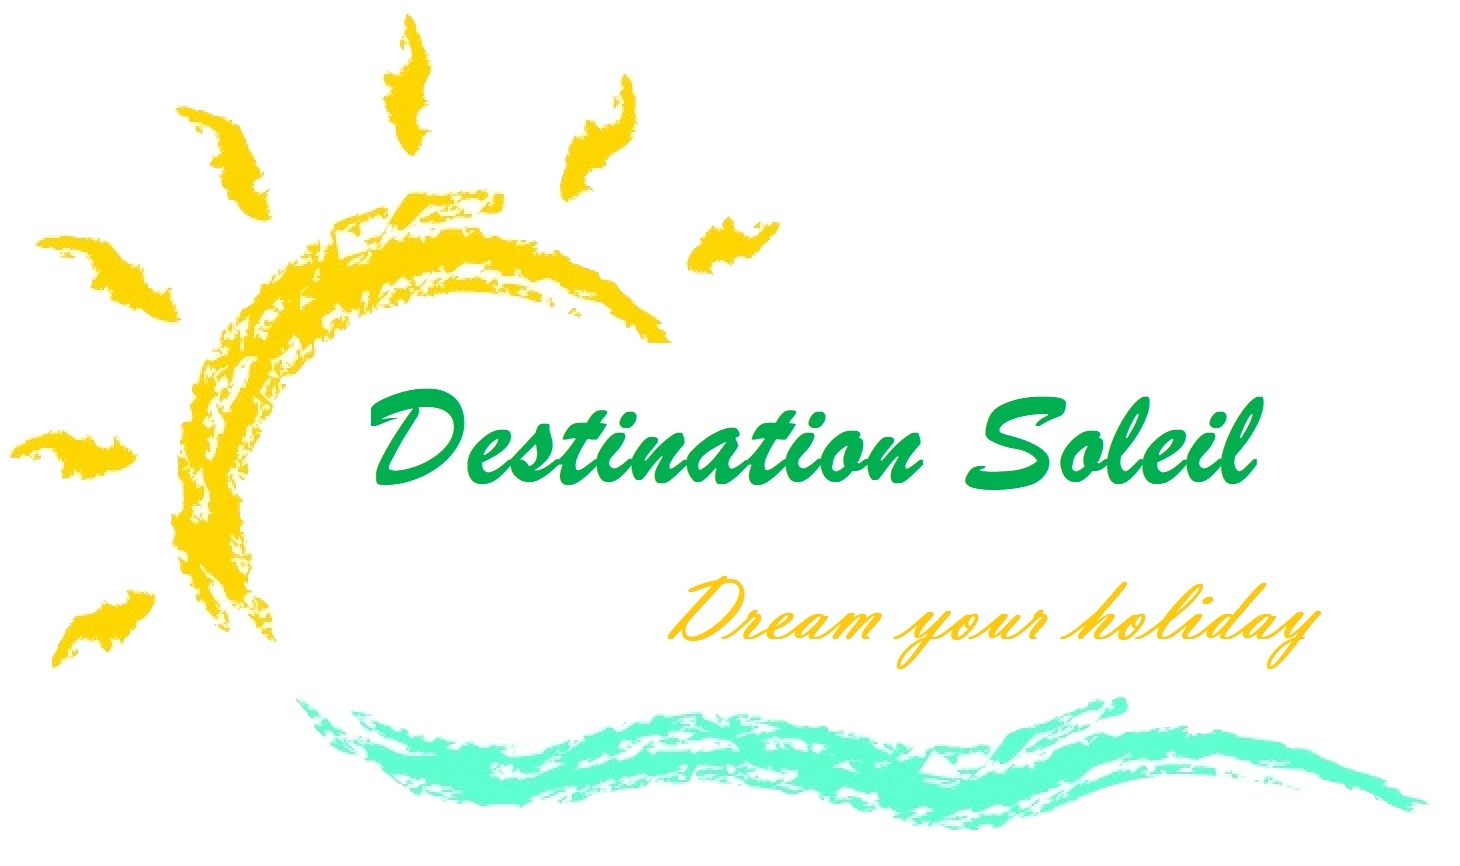 Bestination soleil logo